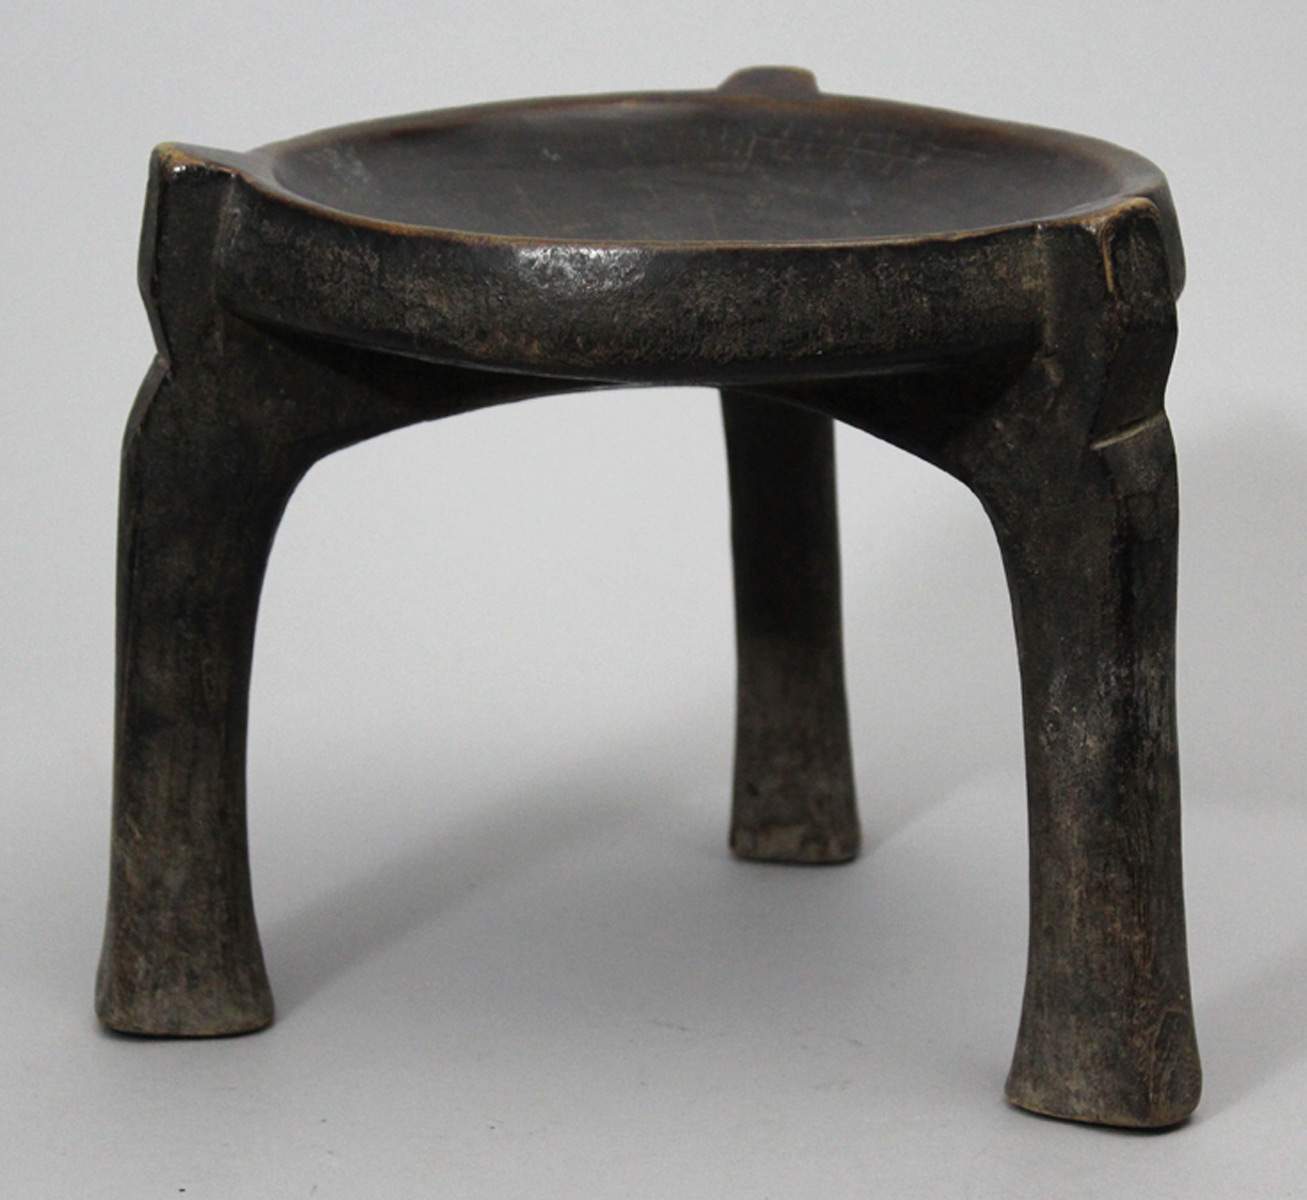 Hocker, Hehe.Holz. Sitzfläche mit dunkler Gebrauchspatina. Niedrige Form auf drei leicht